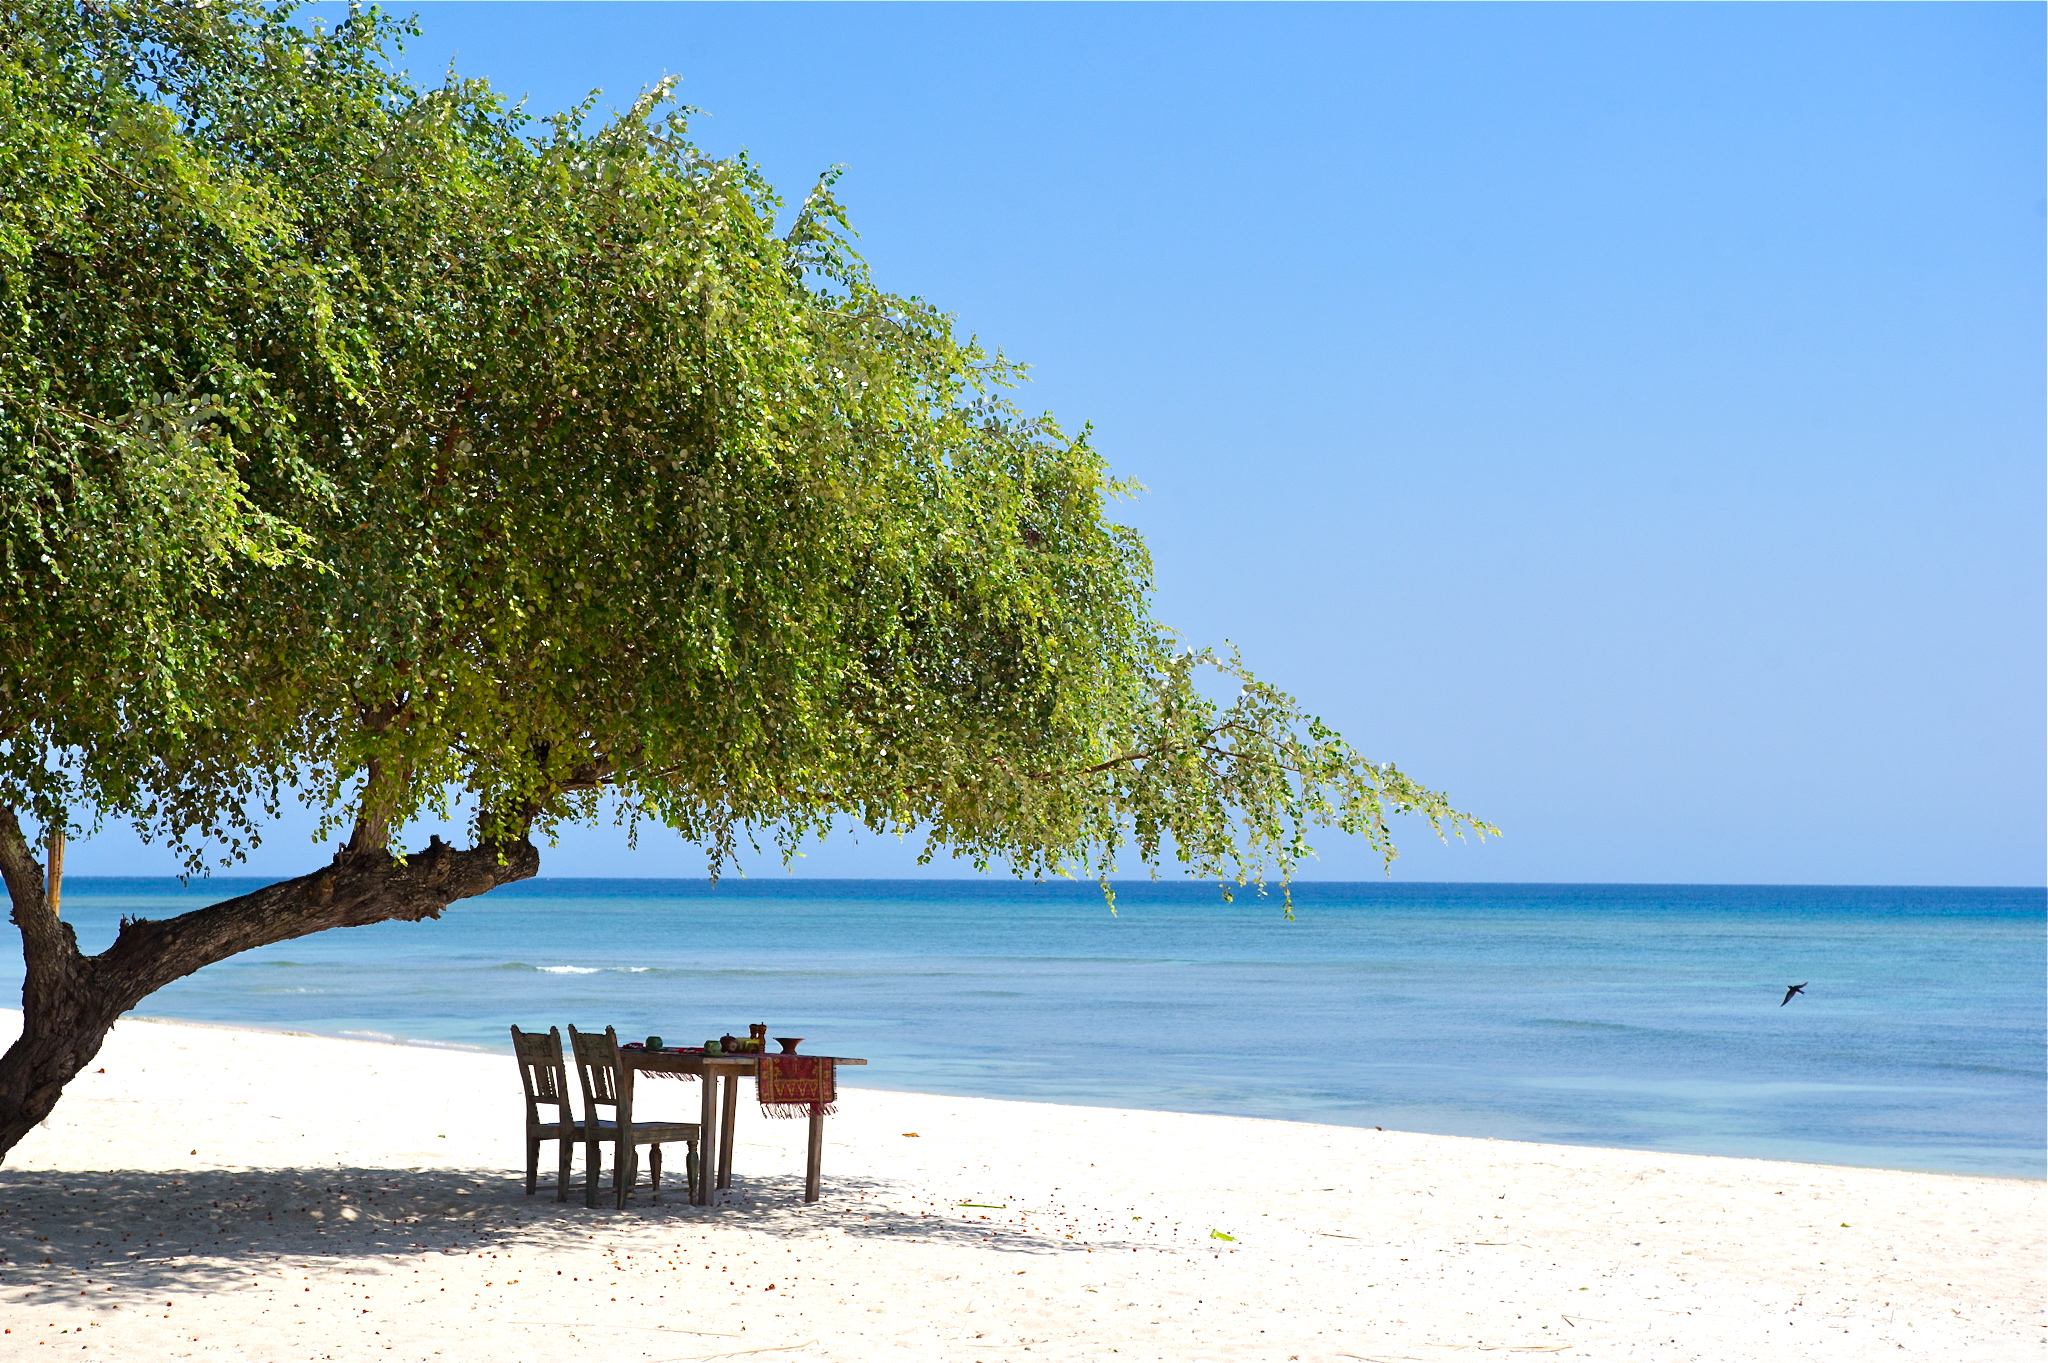 Pantai Sire'in fotoğrafı - rahatlamayı sevenler arasında popüler bir yer